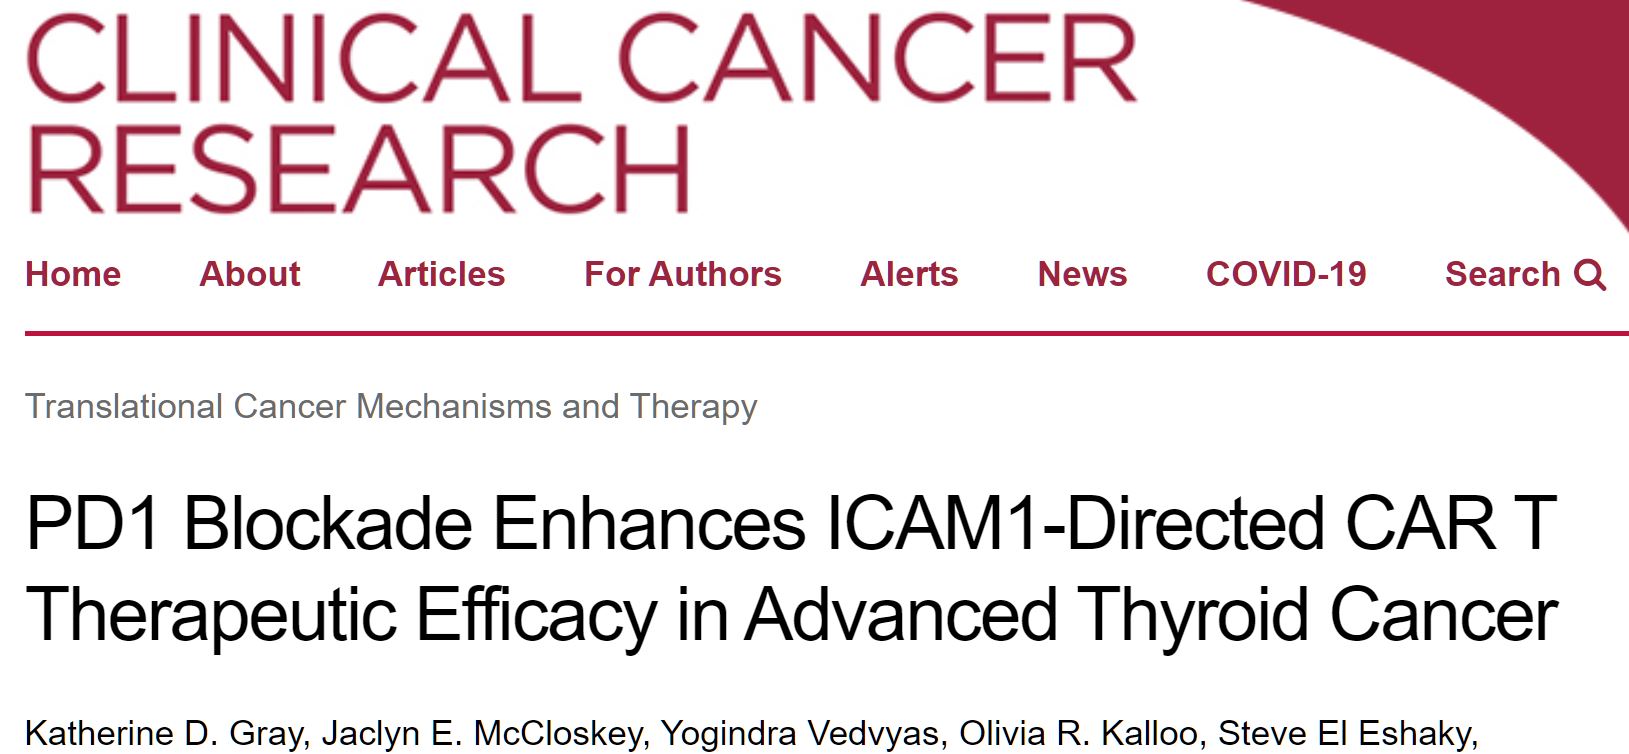 Clin Cancer Res：阻断PD<font color="red">1</font>可增强<font color="red">ICAM1</font>靶向CAR T细胞治疗晚期甲状腺癌的疗效